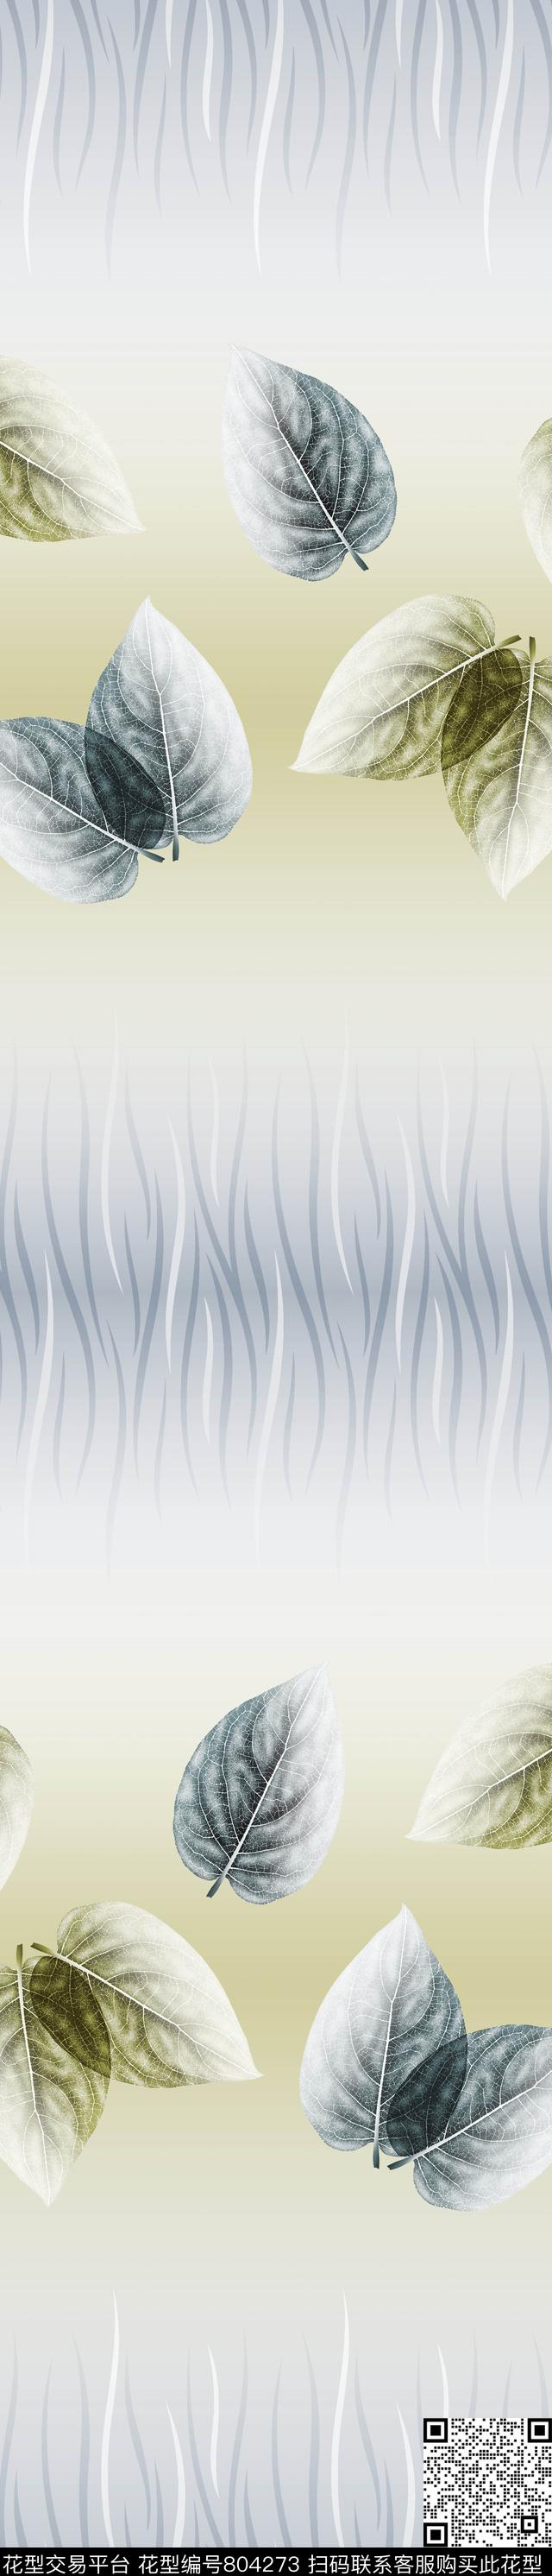 yjh160708k.jpg - 804273 - 叶子 彩条 窗帘 - 传统印花花型 － 窗帘花型设计 － 瓦栏